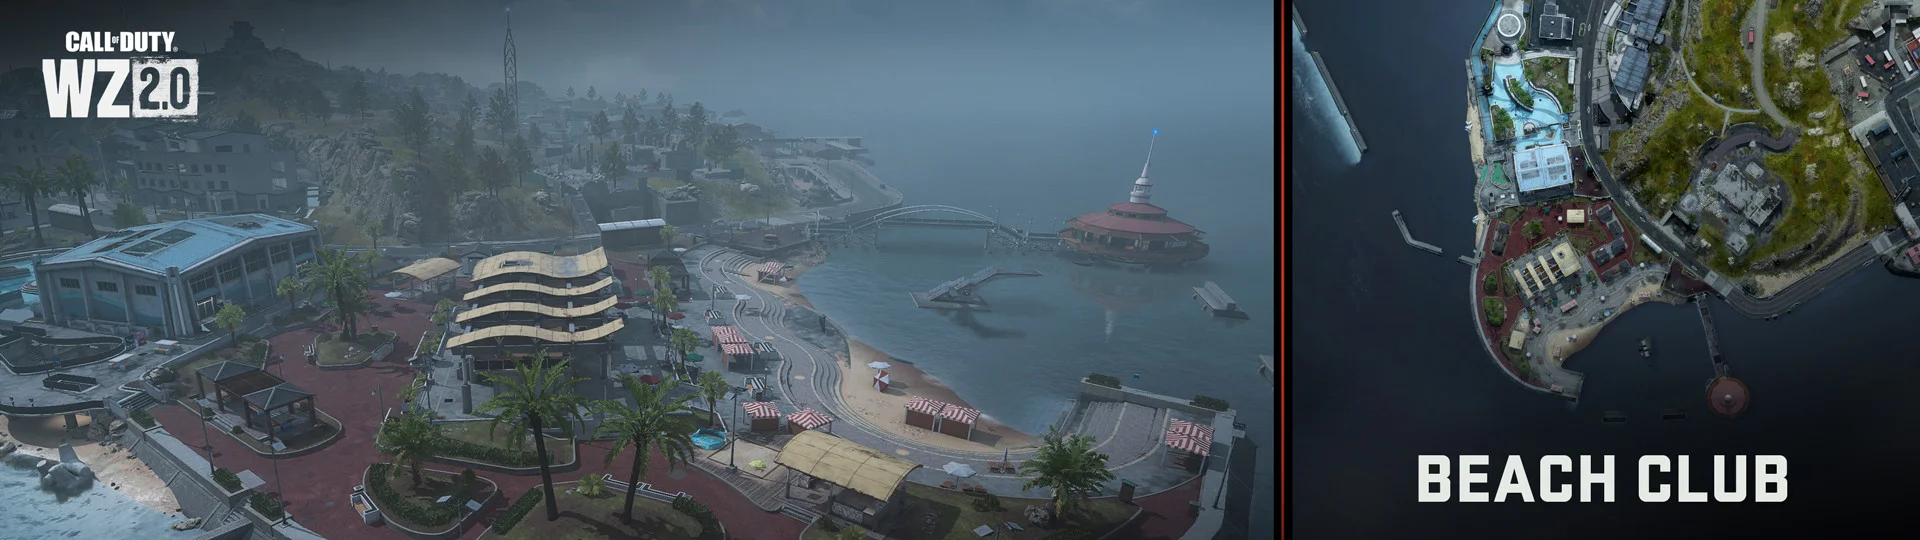 Авторы Call of Duty: Warzone 2 представили новую карту в японском стиле - фото 2